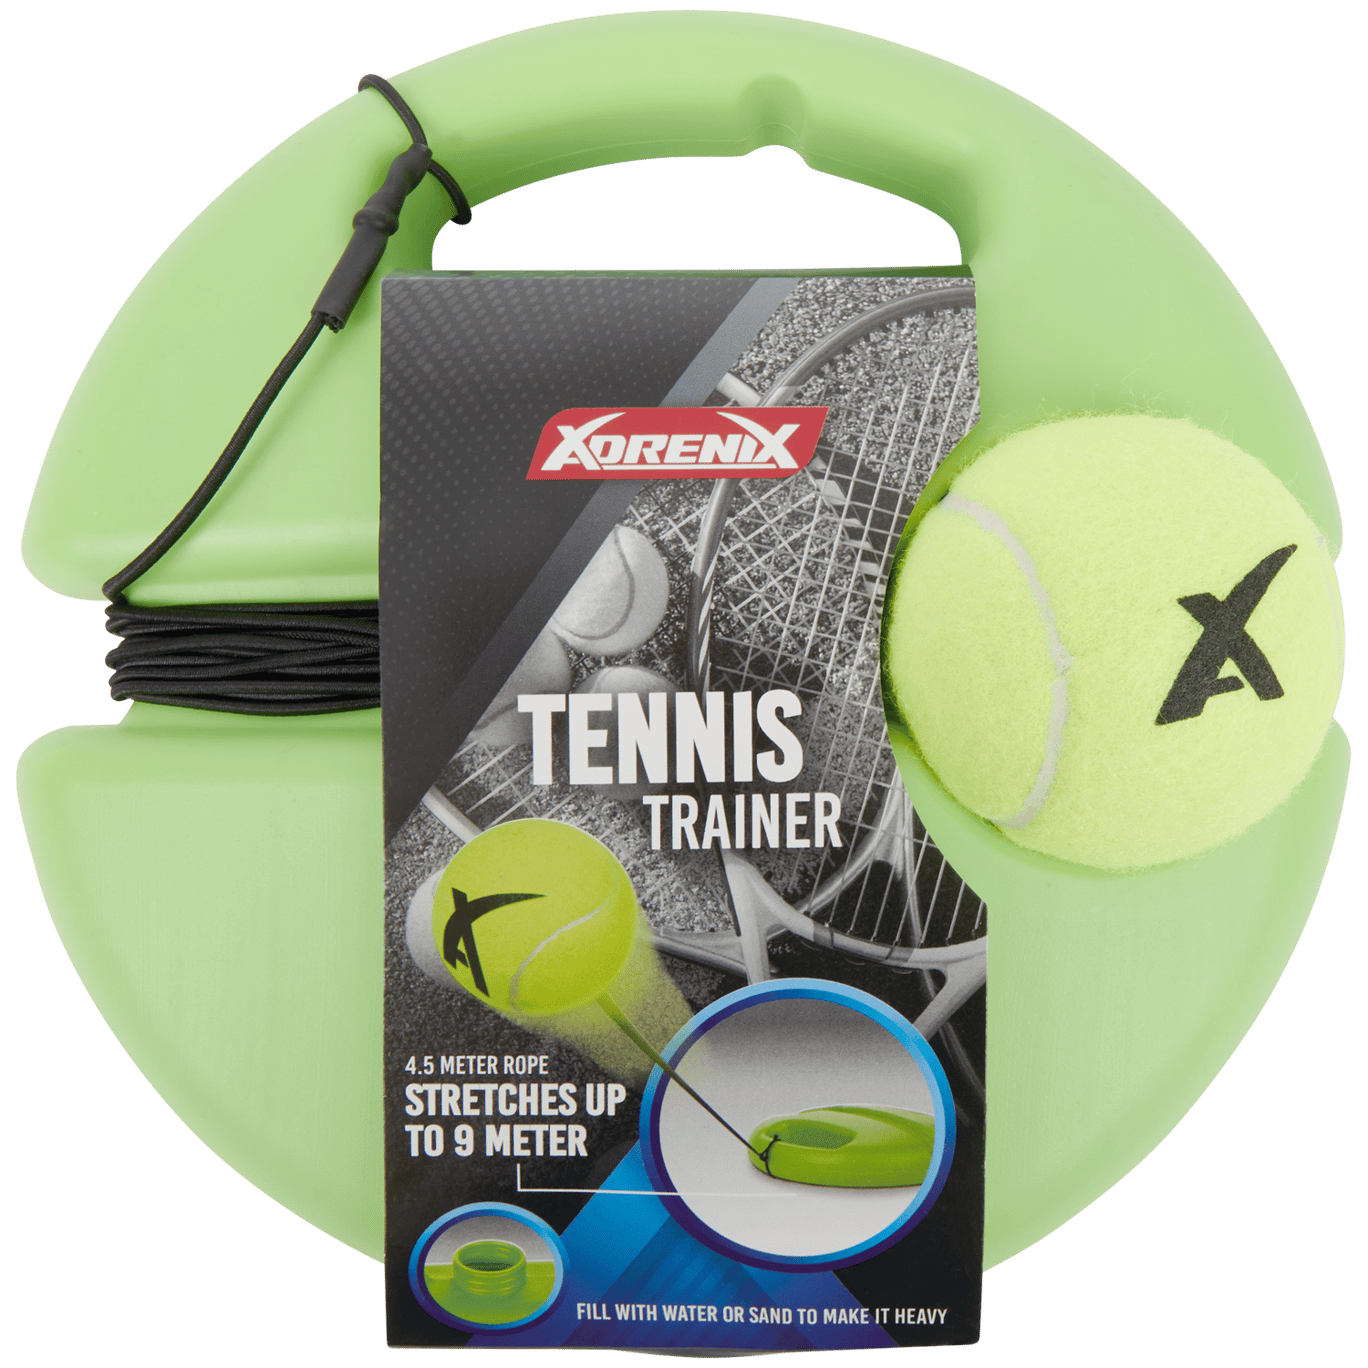 Equipamento para treino de ténis XdreniX